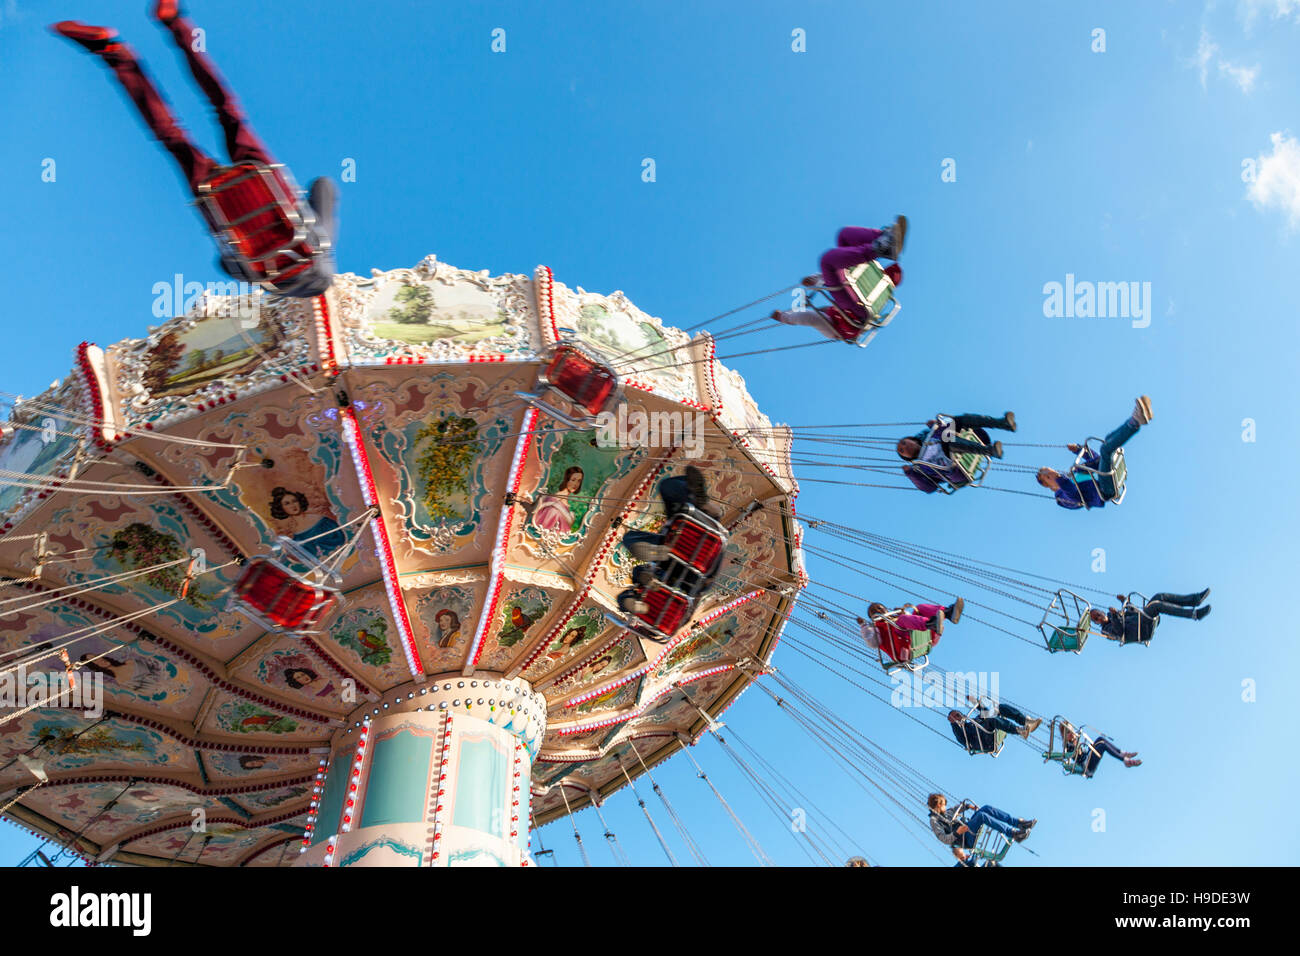 Sedie volanti fairground ride a Goose Fair, Nottingham, Inghilterra, Regno Unito Foto Stock